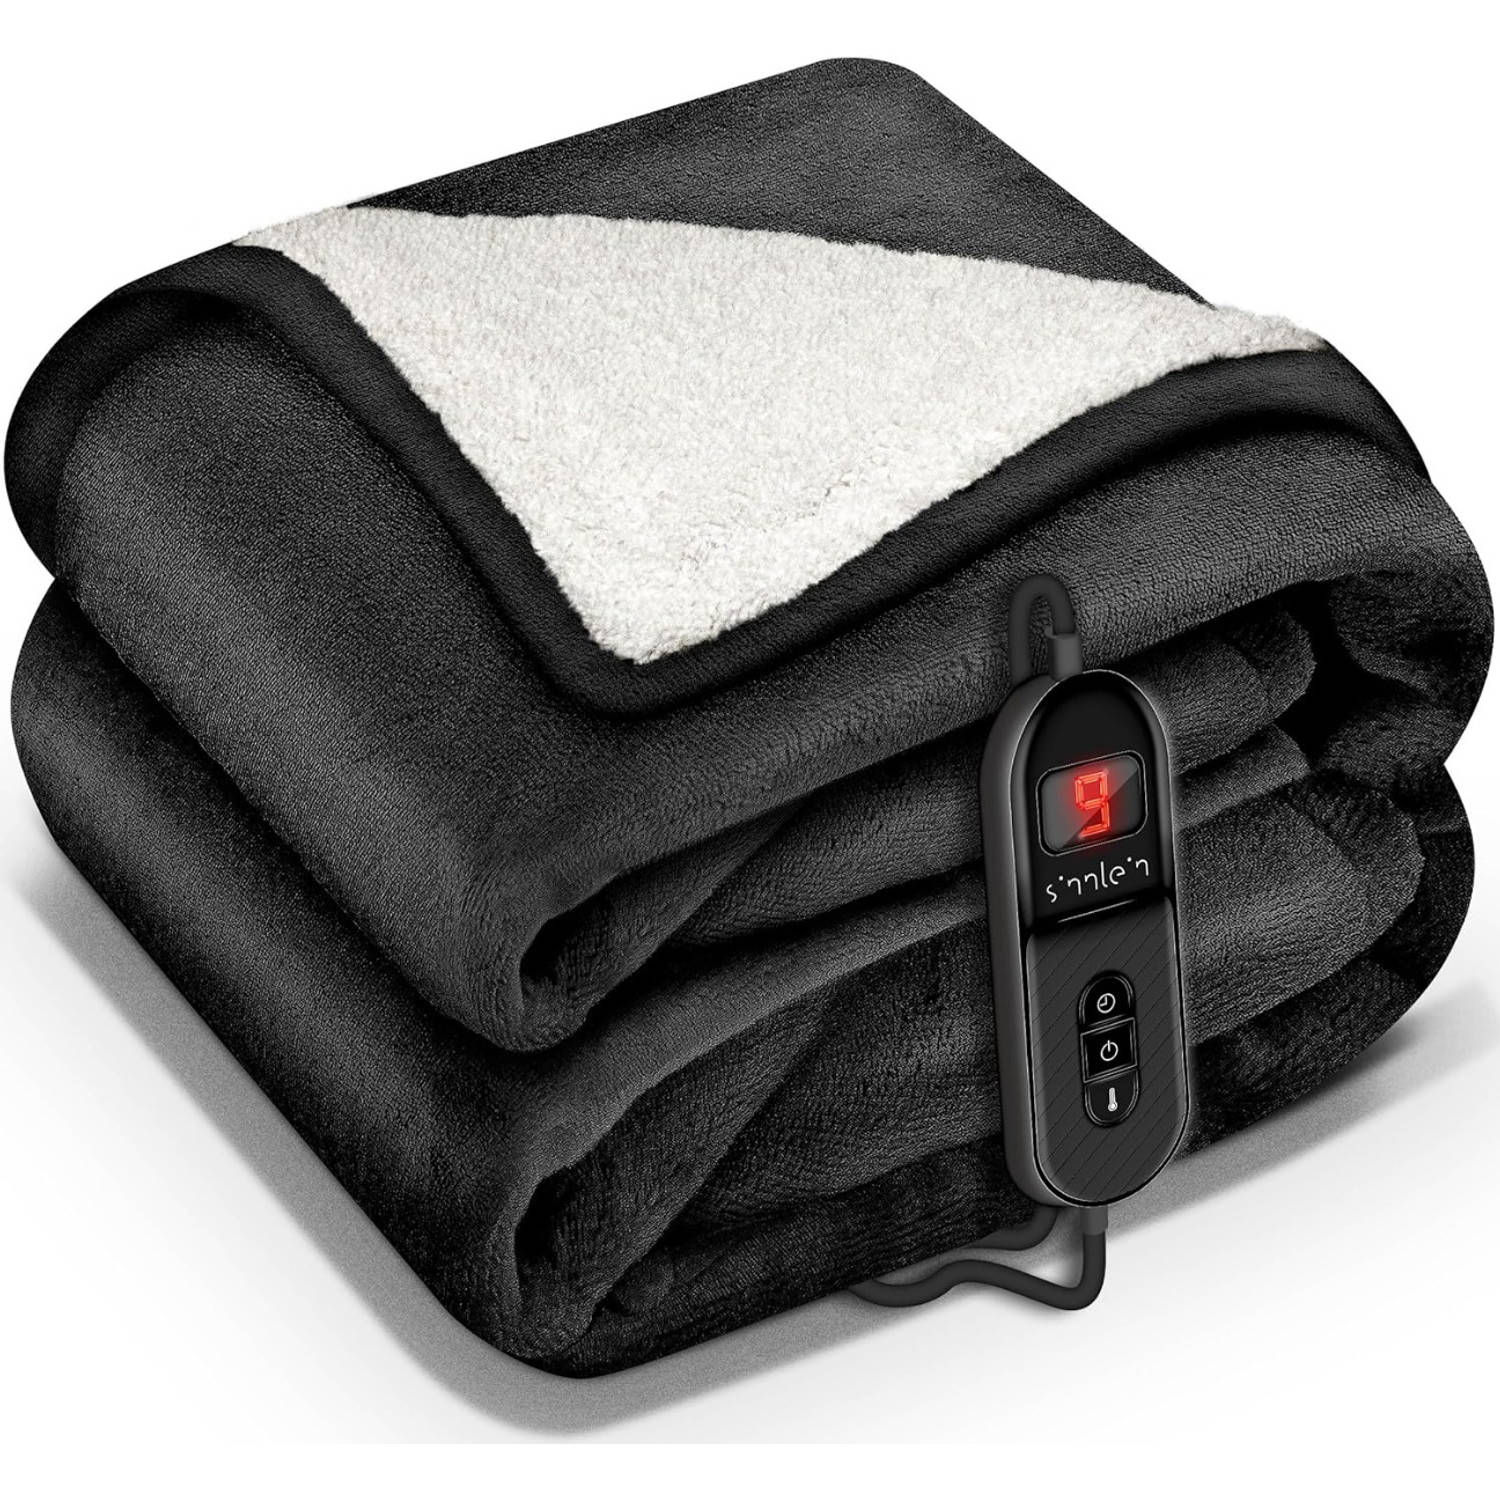 Sinnlein- Elektrische deken met automatische uitschakeling, zwart, 200 x 180 cm, warmtedeken met 9 t